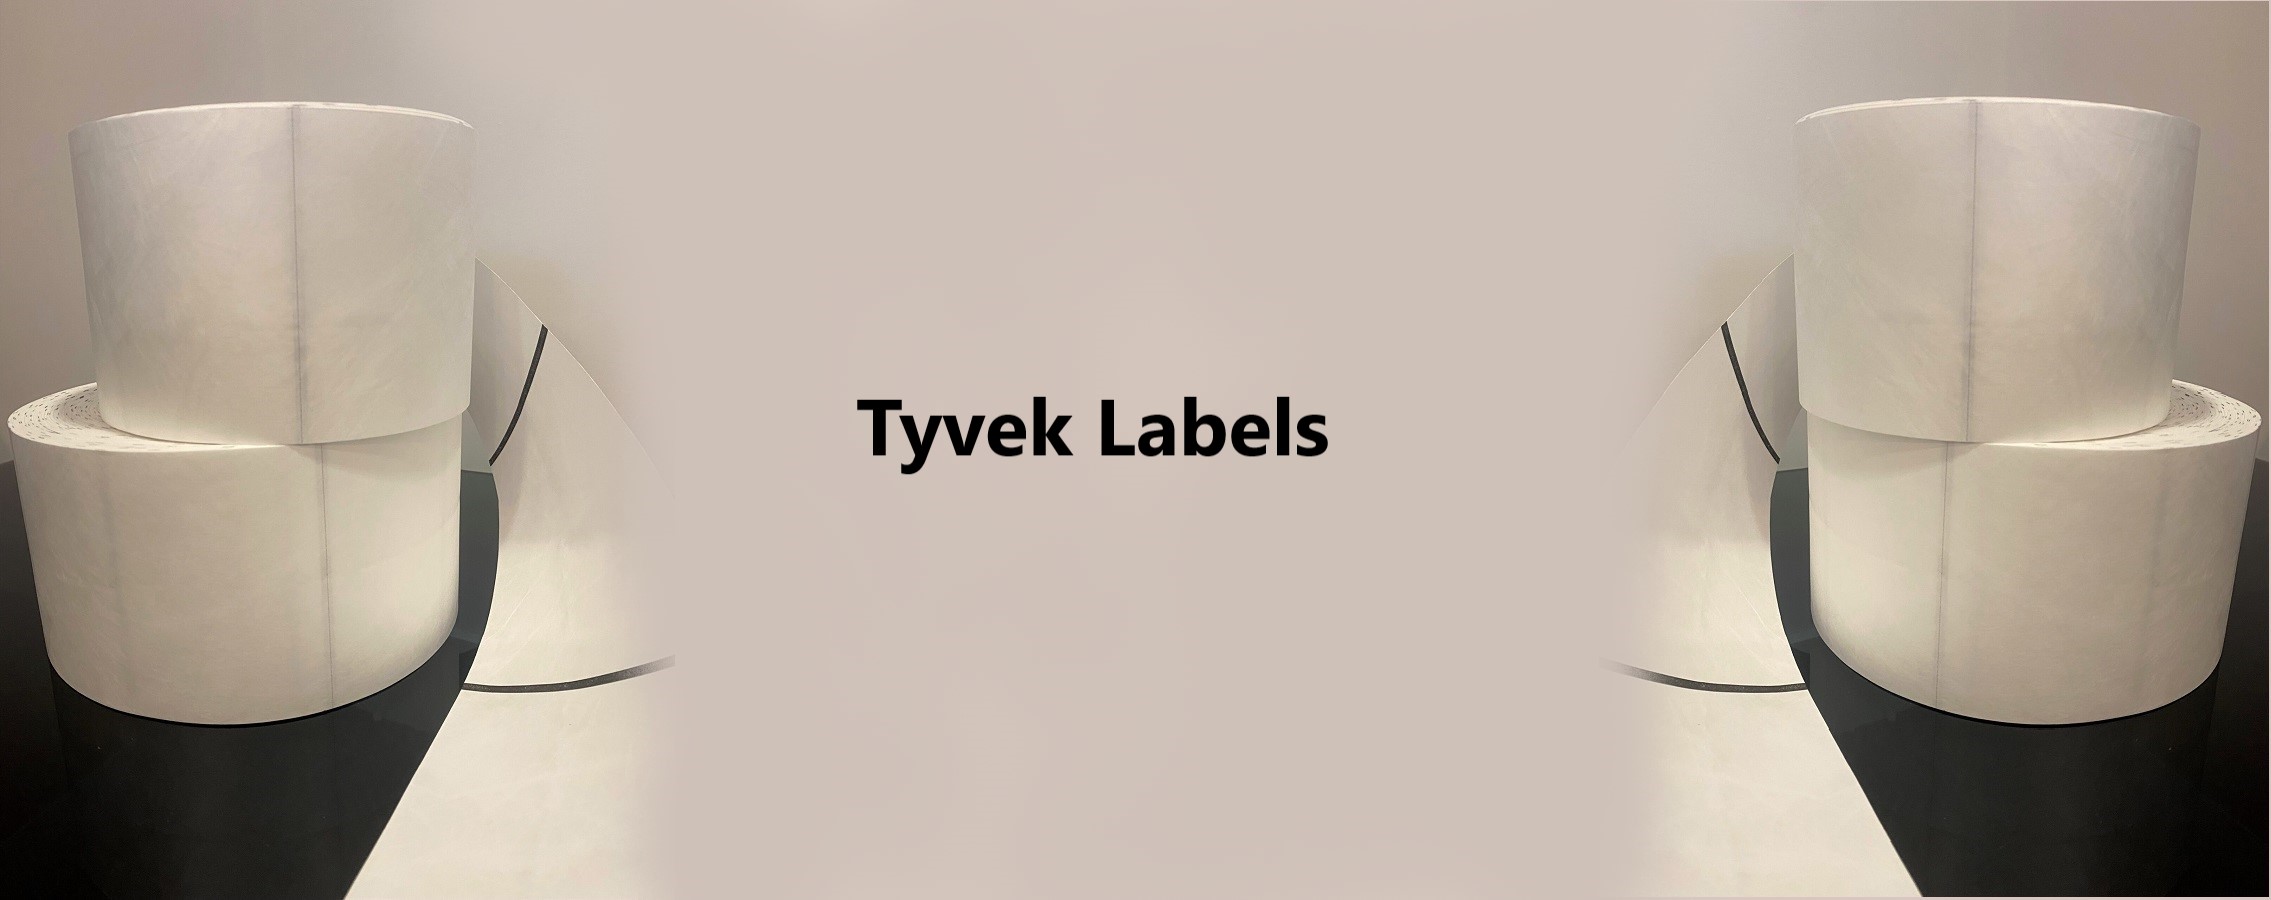 Tyvek-Labels